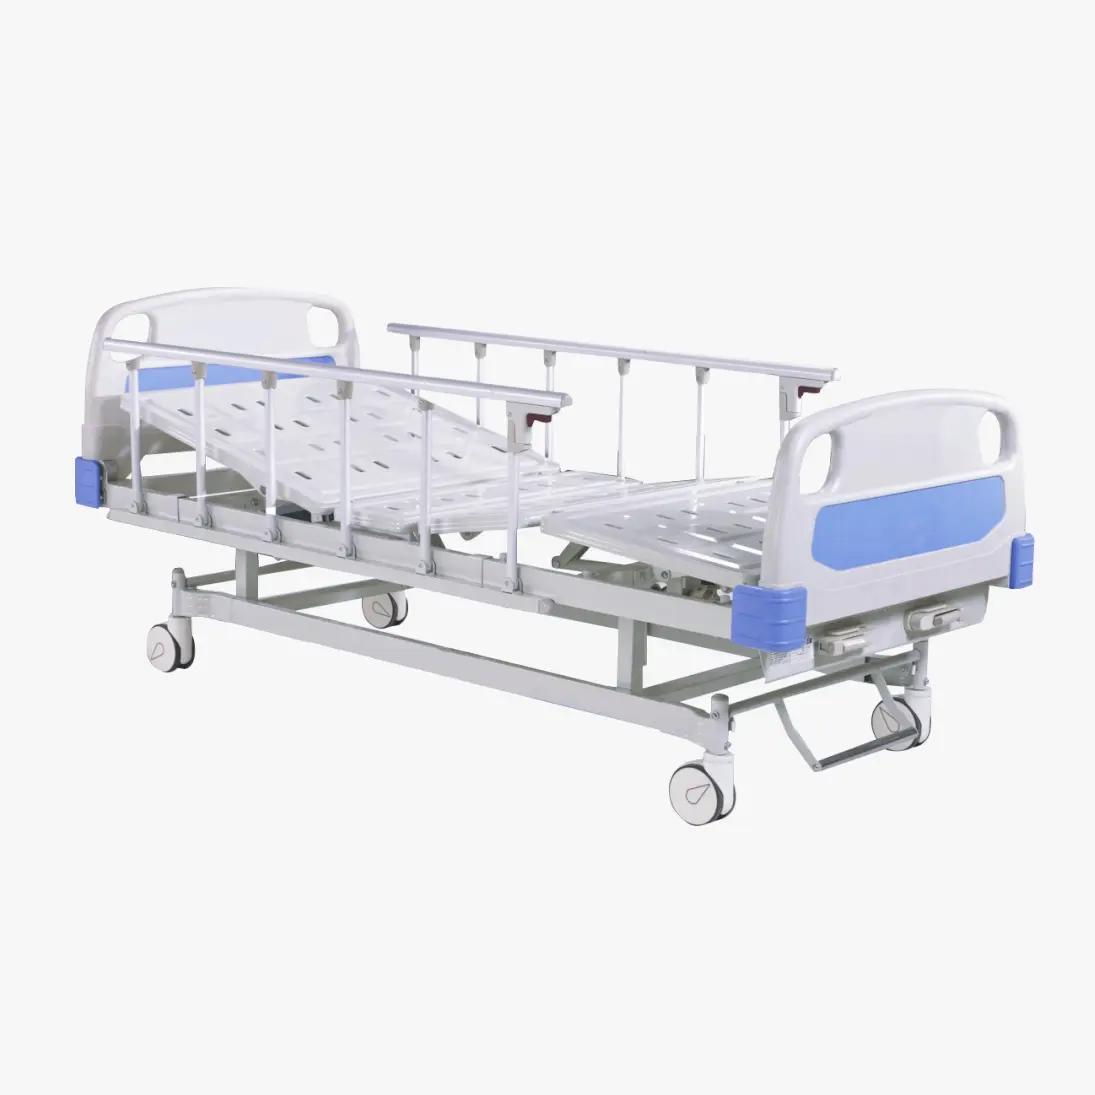 Πώς συμβάλλουν τα νοσοκομειακά κρεβάτια στη φροντίδα των ασθενών;